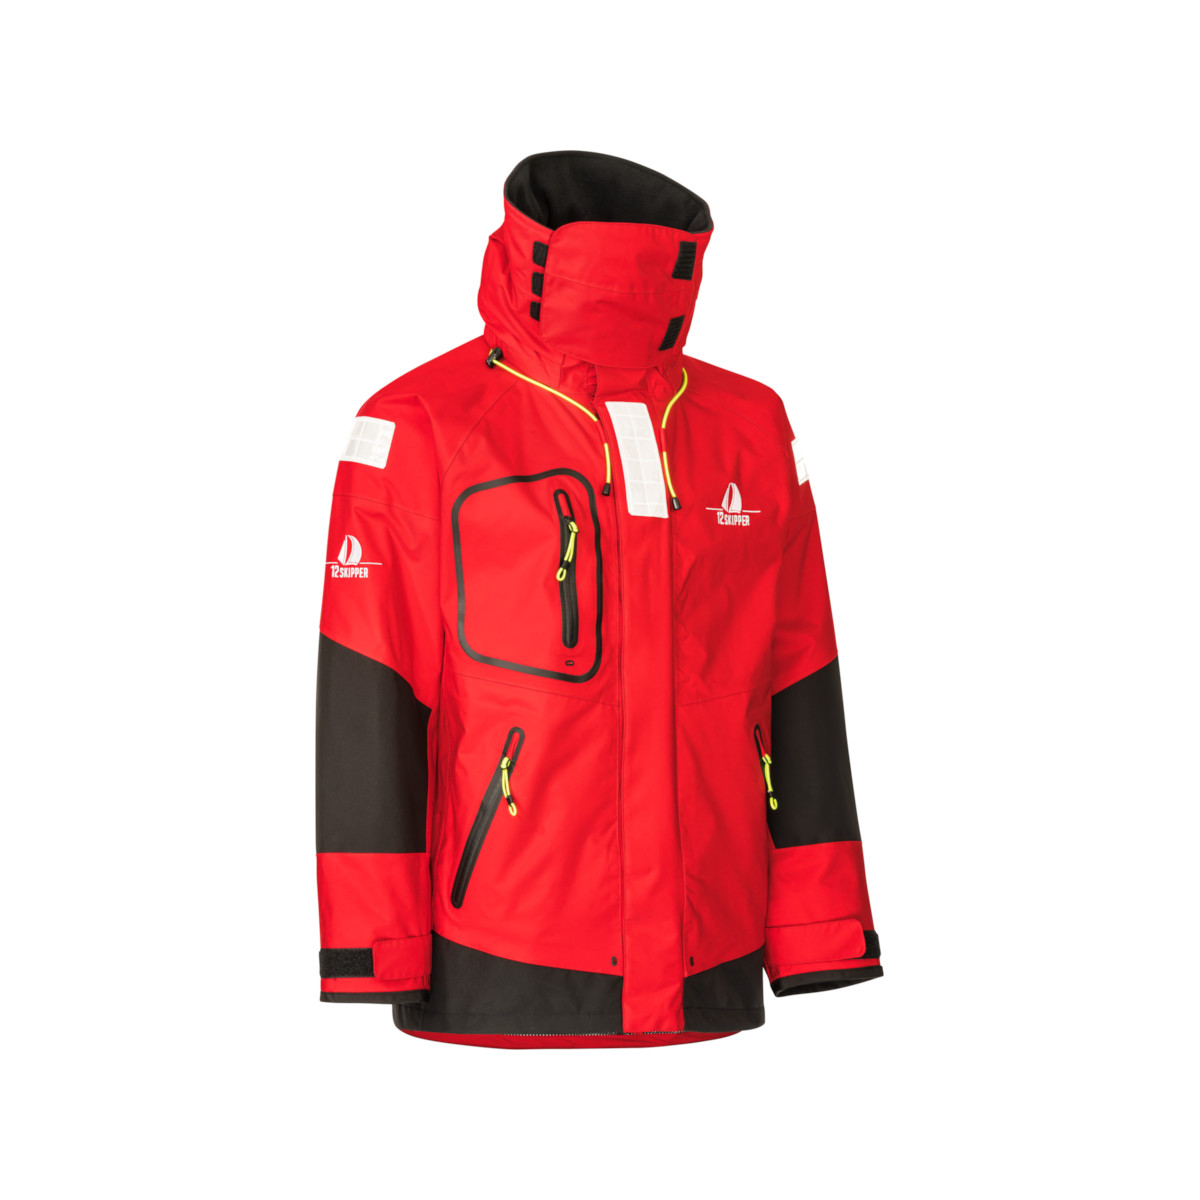 12skipper Magellan veste de quart hauturière, unisexe - rouge, taille XL